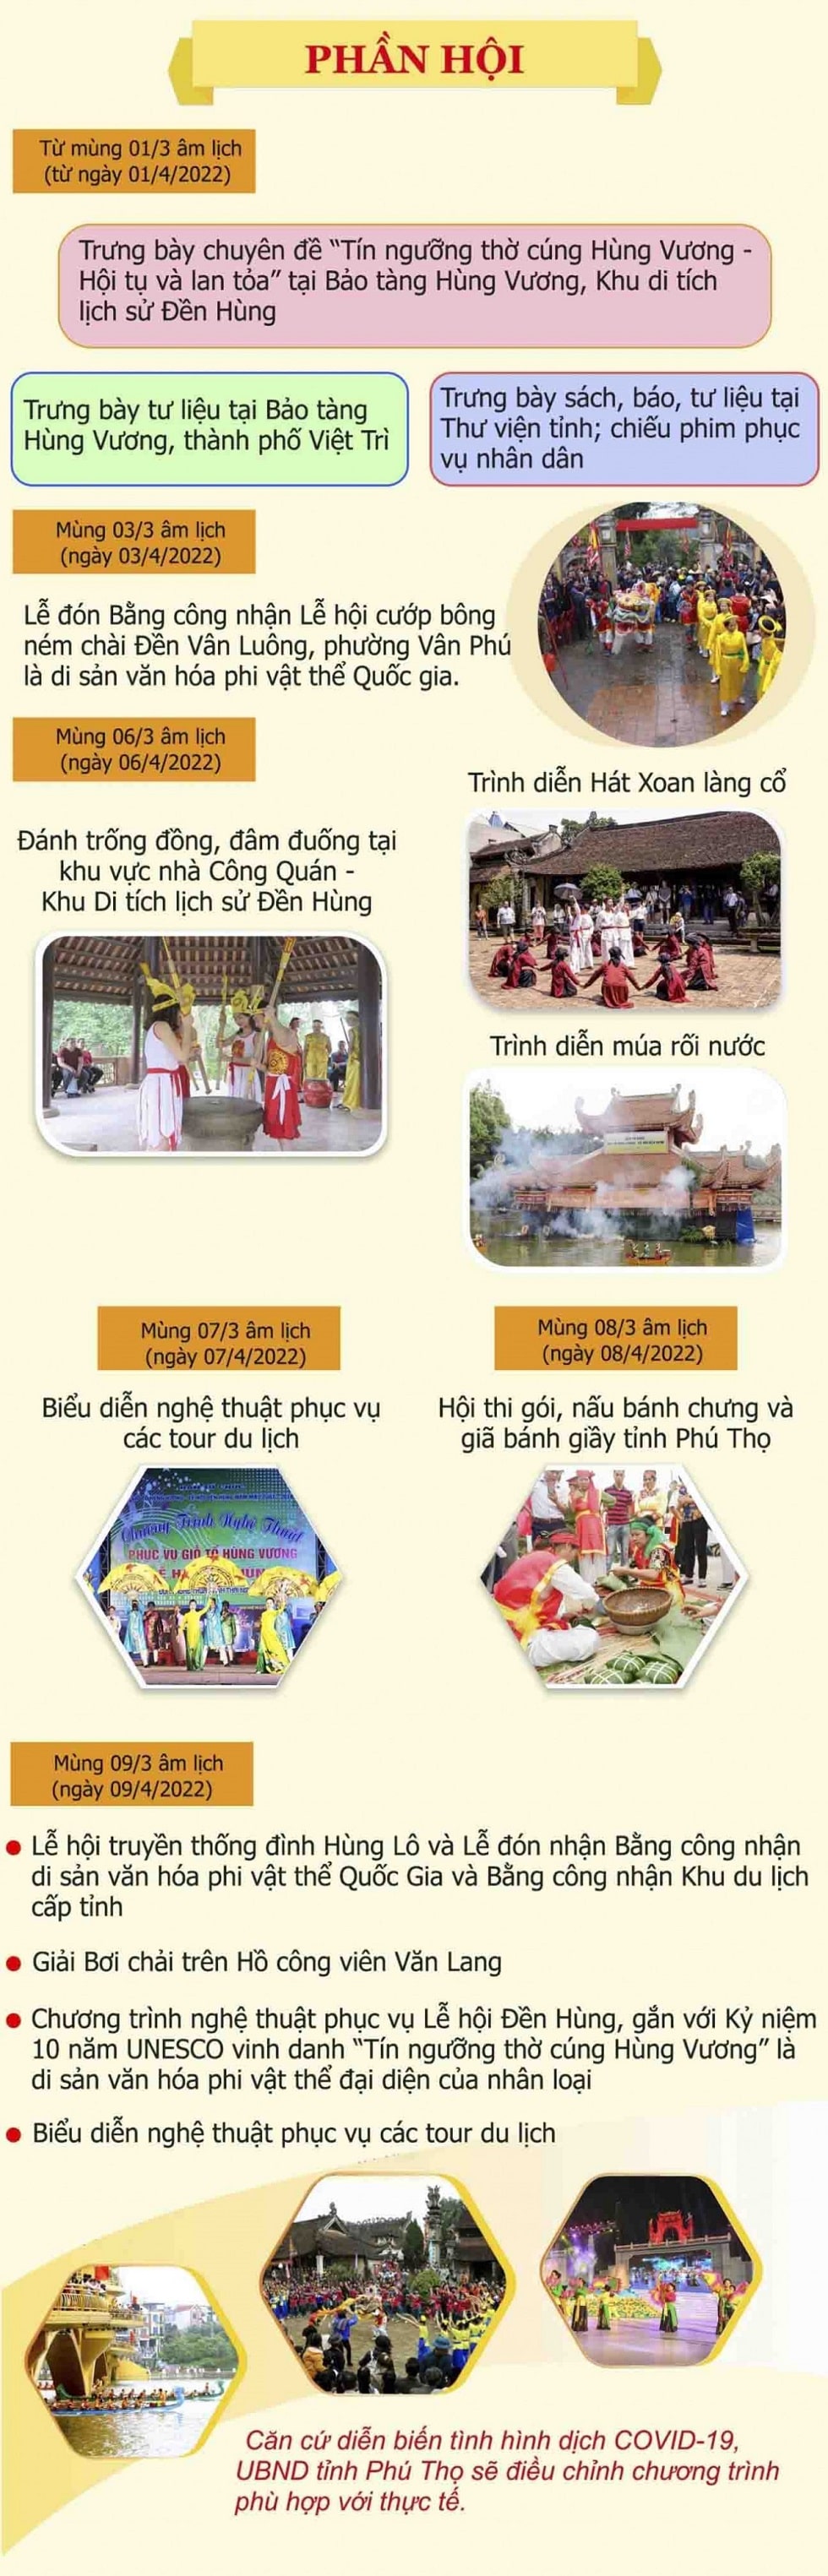 Giỗ tổ Hùng Vương năm 2022 được tổ chức quy mô cấp tỉnh, gắn với kỷ niệm 10 năm UNESCO công nhận Tín ngưỡng thờ cúng Hùng Vương ở Phú Thọ là di sản văn hóa phi vật thể đại diện của nhân loại.